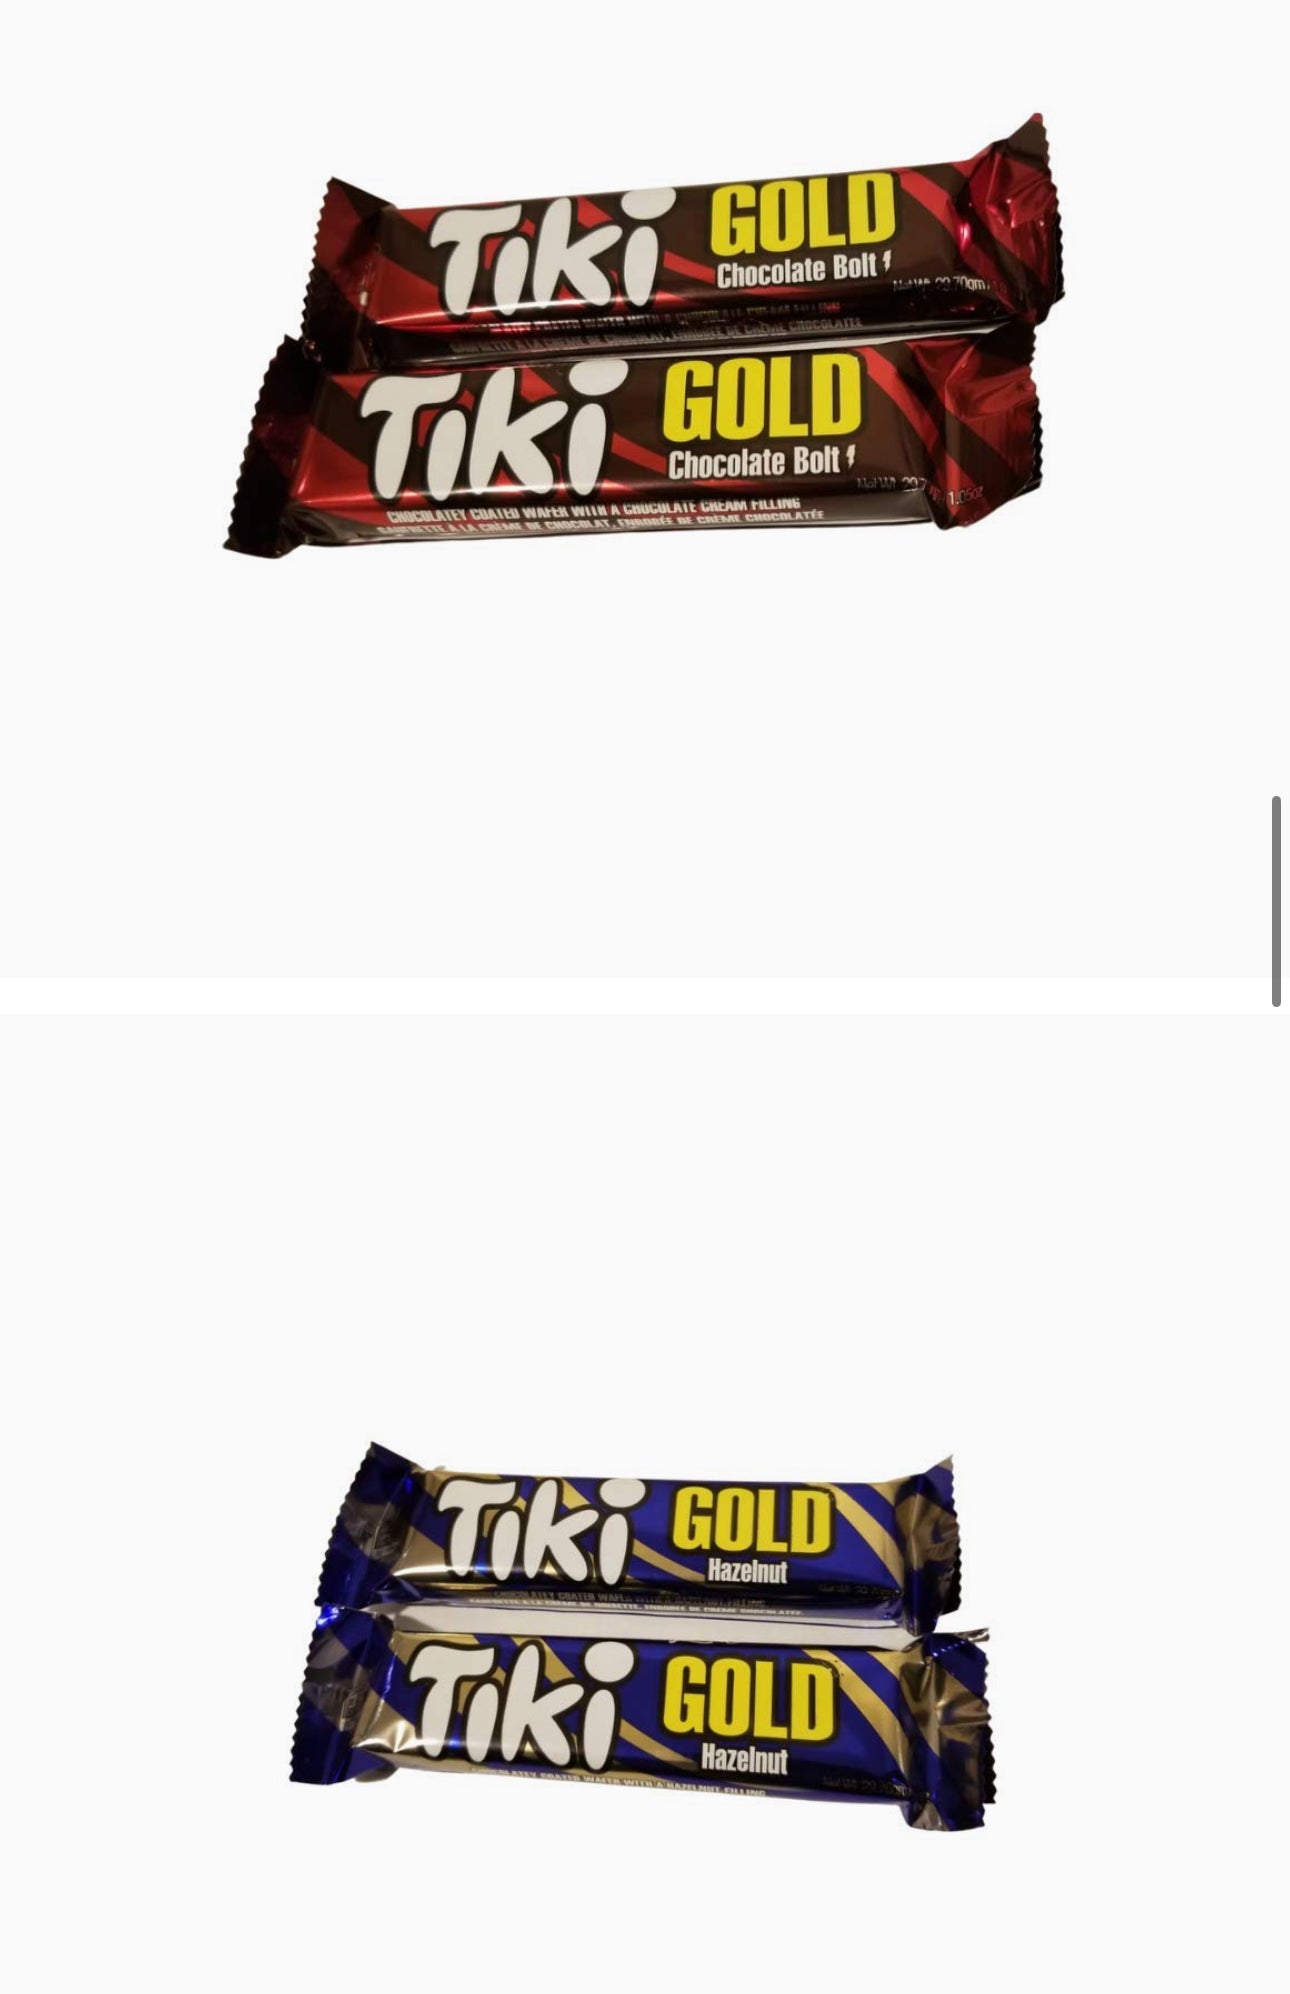 TIKI GOLD